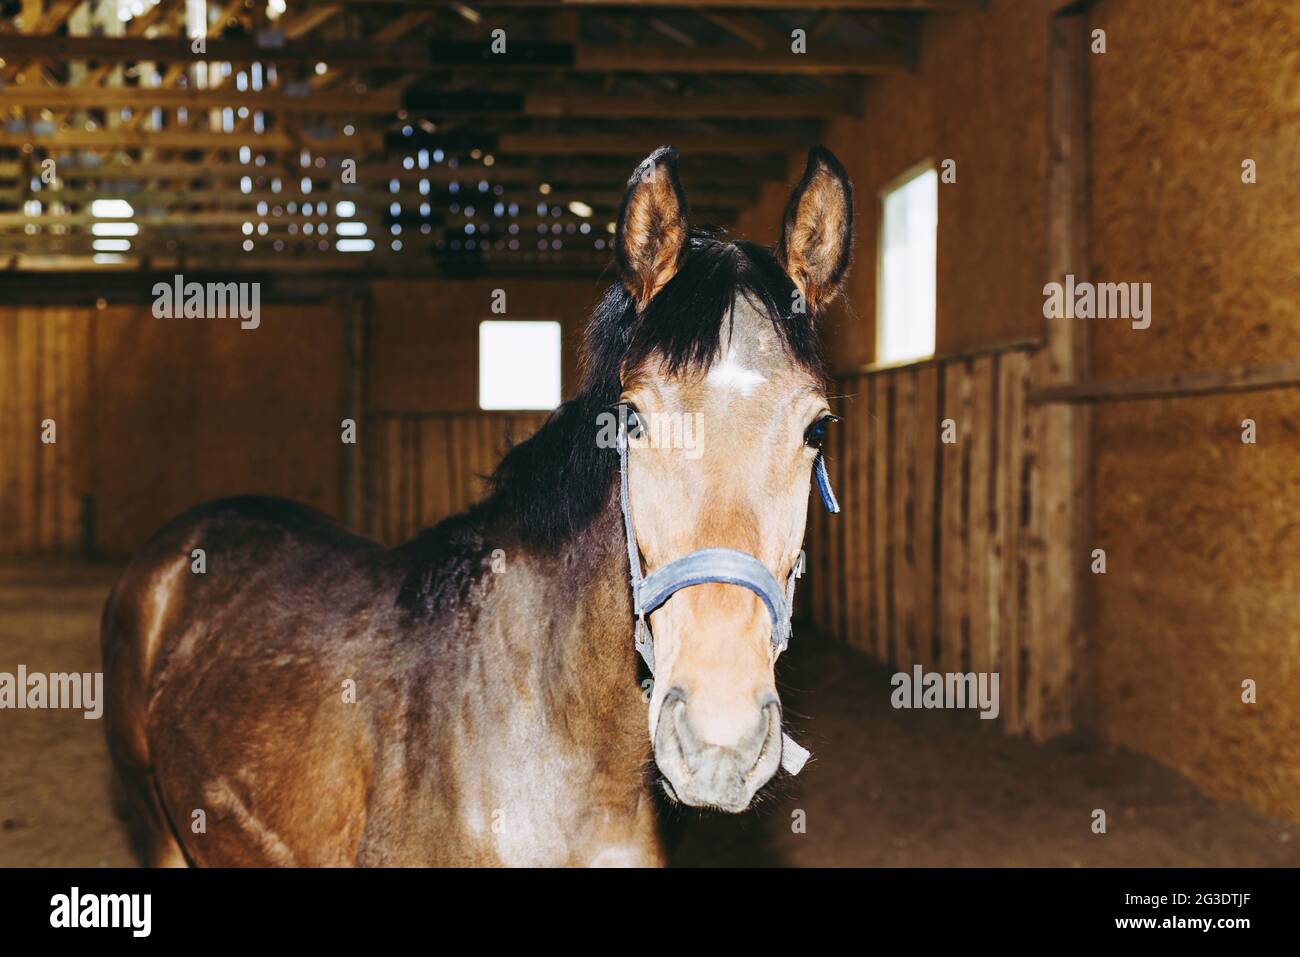 Bellissimo stupefacente, sano cavallo di castagno marrone al posto di equitazione al coperto. Ritratto di un giovane cavallo purebred.Closeup. Foto Stock